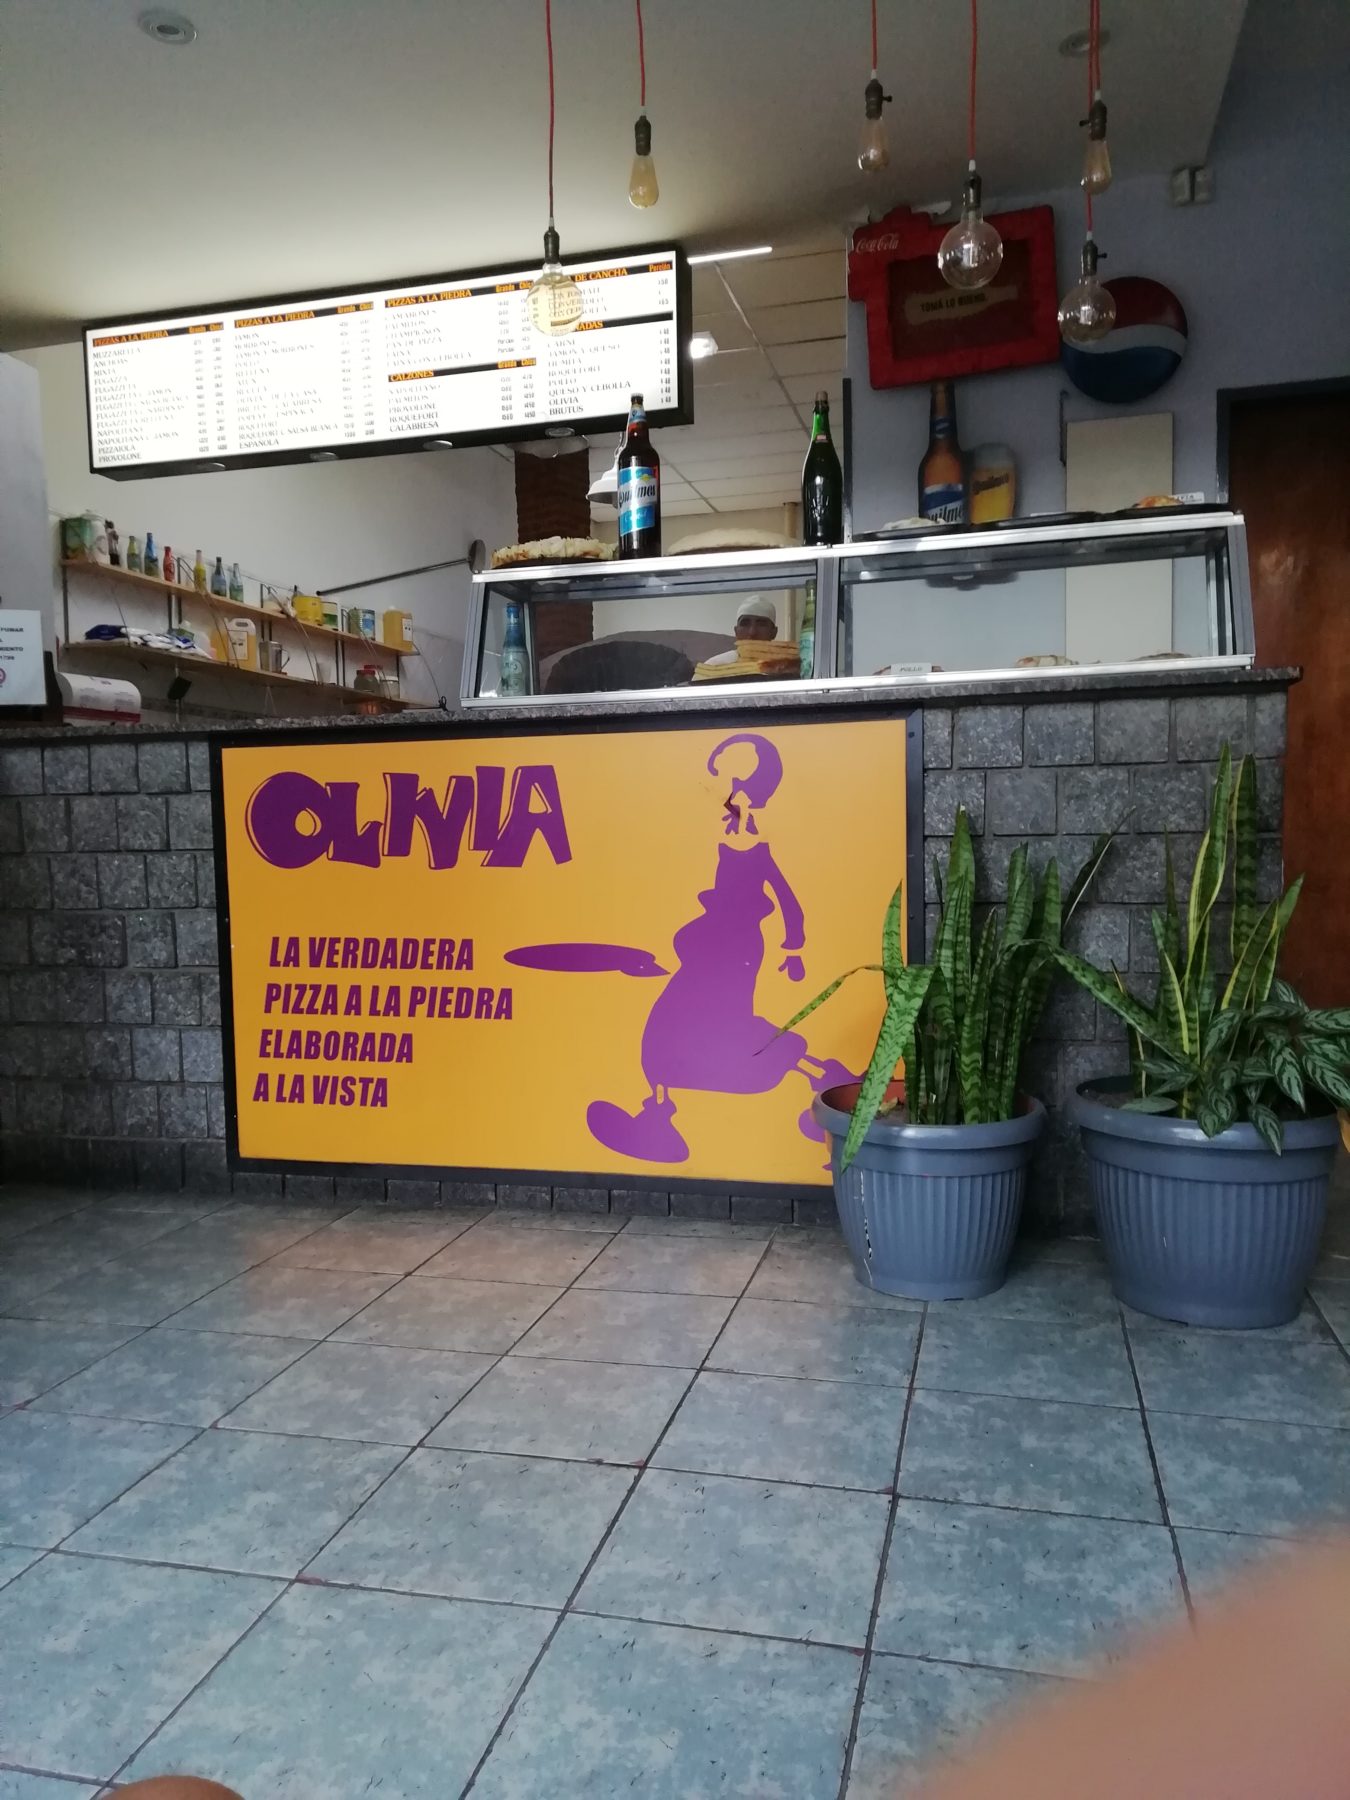 Olivia Pizzeria in Villa Crespo